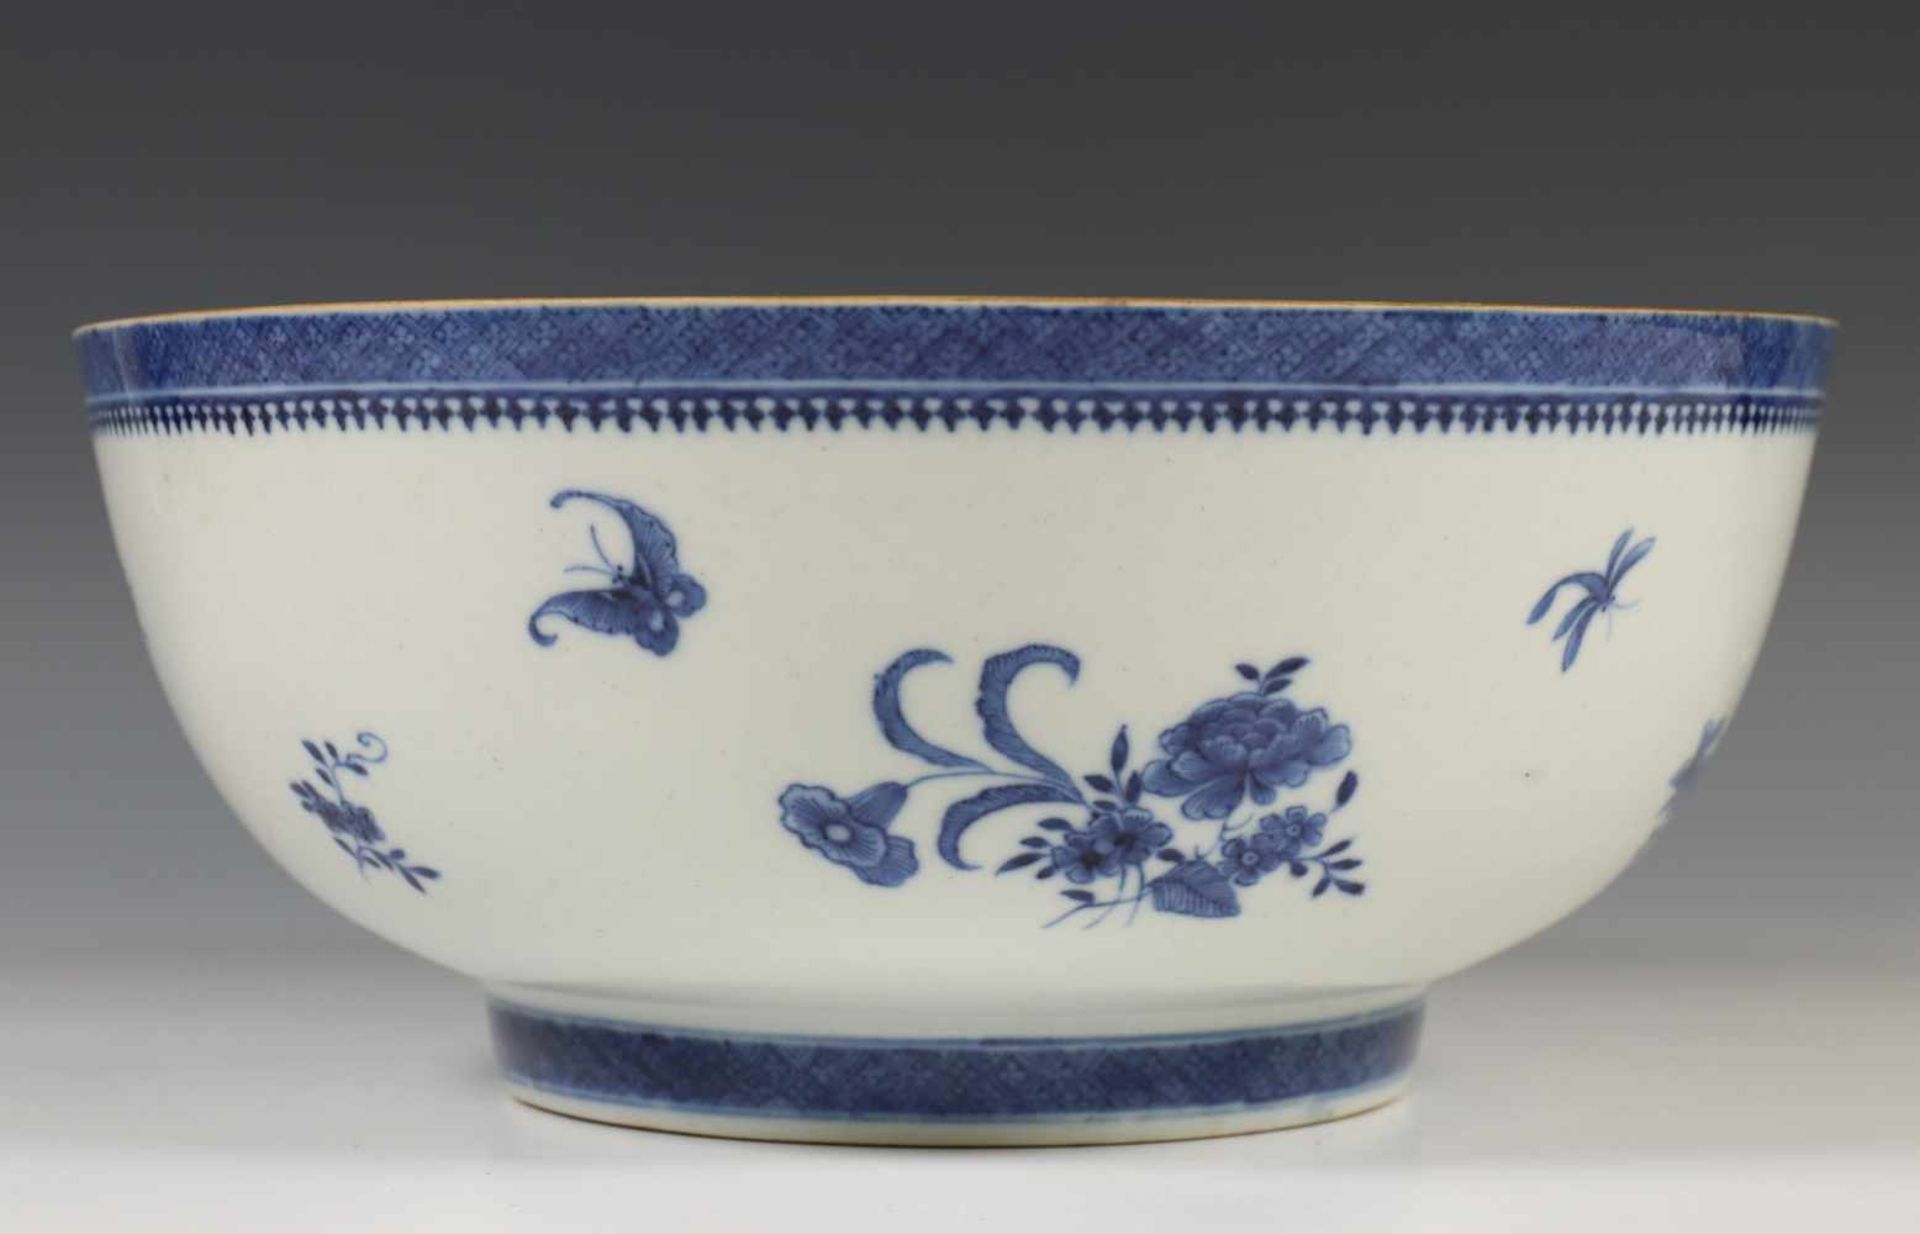 China, paar blauw-witte porseleinen kommen, Jiaqing, ca. 1800,gedecoreerd met insecten en bloemen (